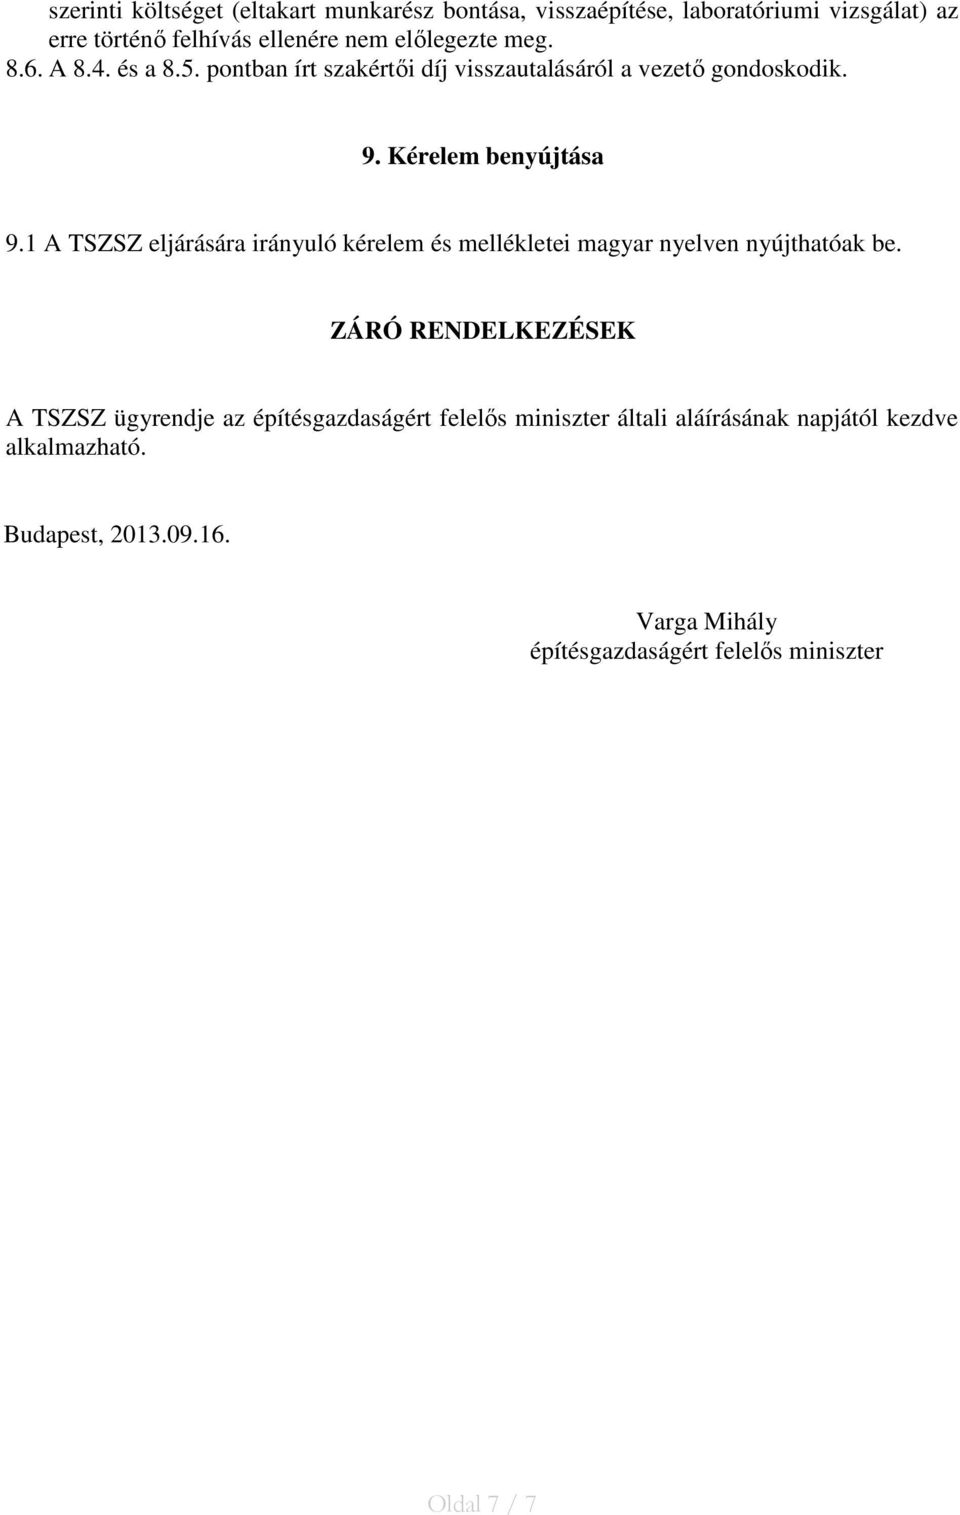 1 A TSZSZ eljárására irányuló kérelem és mellékletei magyar nyelven nyújthatóak be.